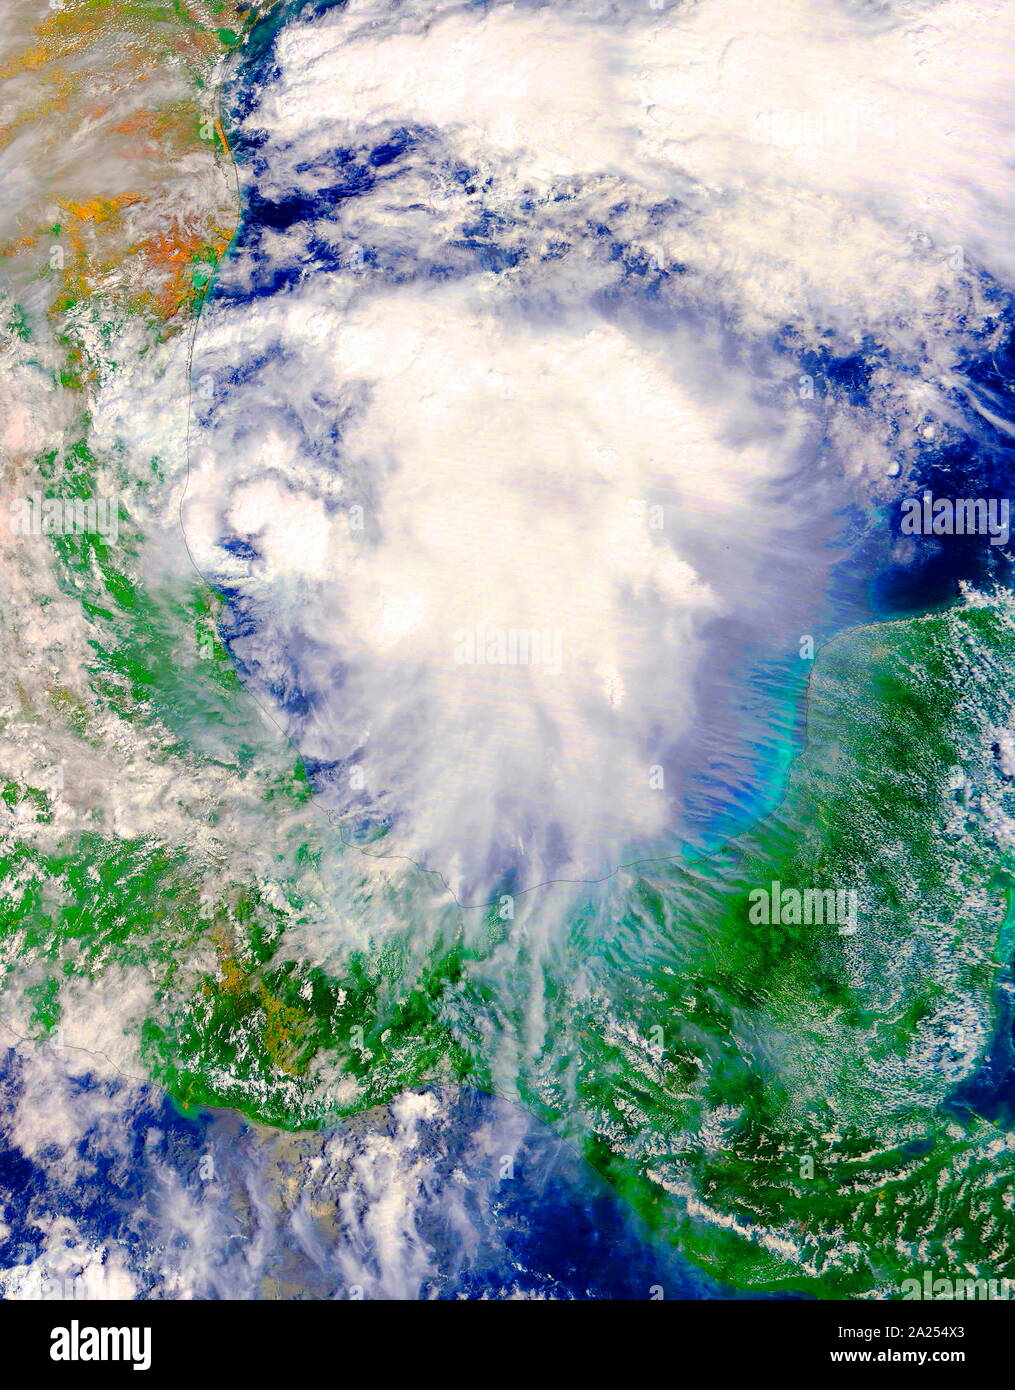 Le satellite Terra de la NASA a adopté au cours de l'élaboration de la tempête tropicale Katia dans l'ouest du golfe du Mexique le 5 septembre 2017 à 13 h 10 HAE (1710 UTC). Banque D'Images